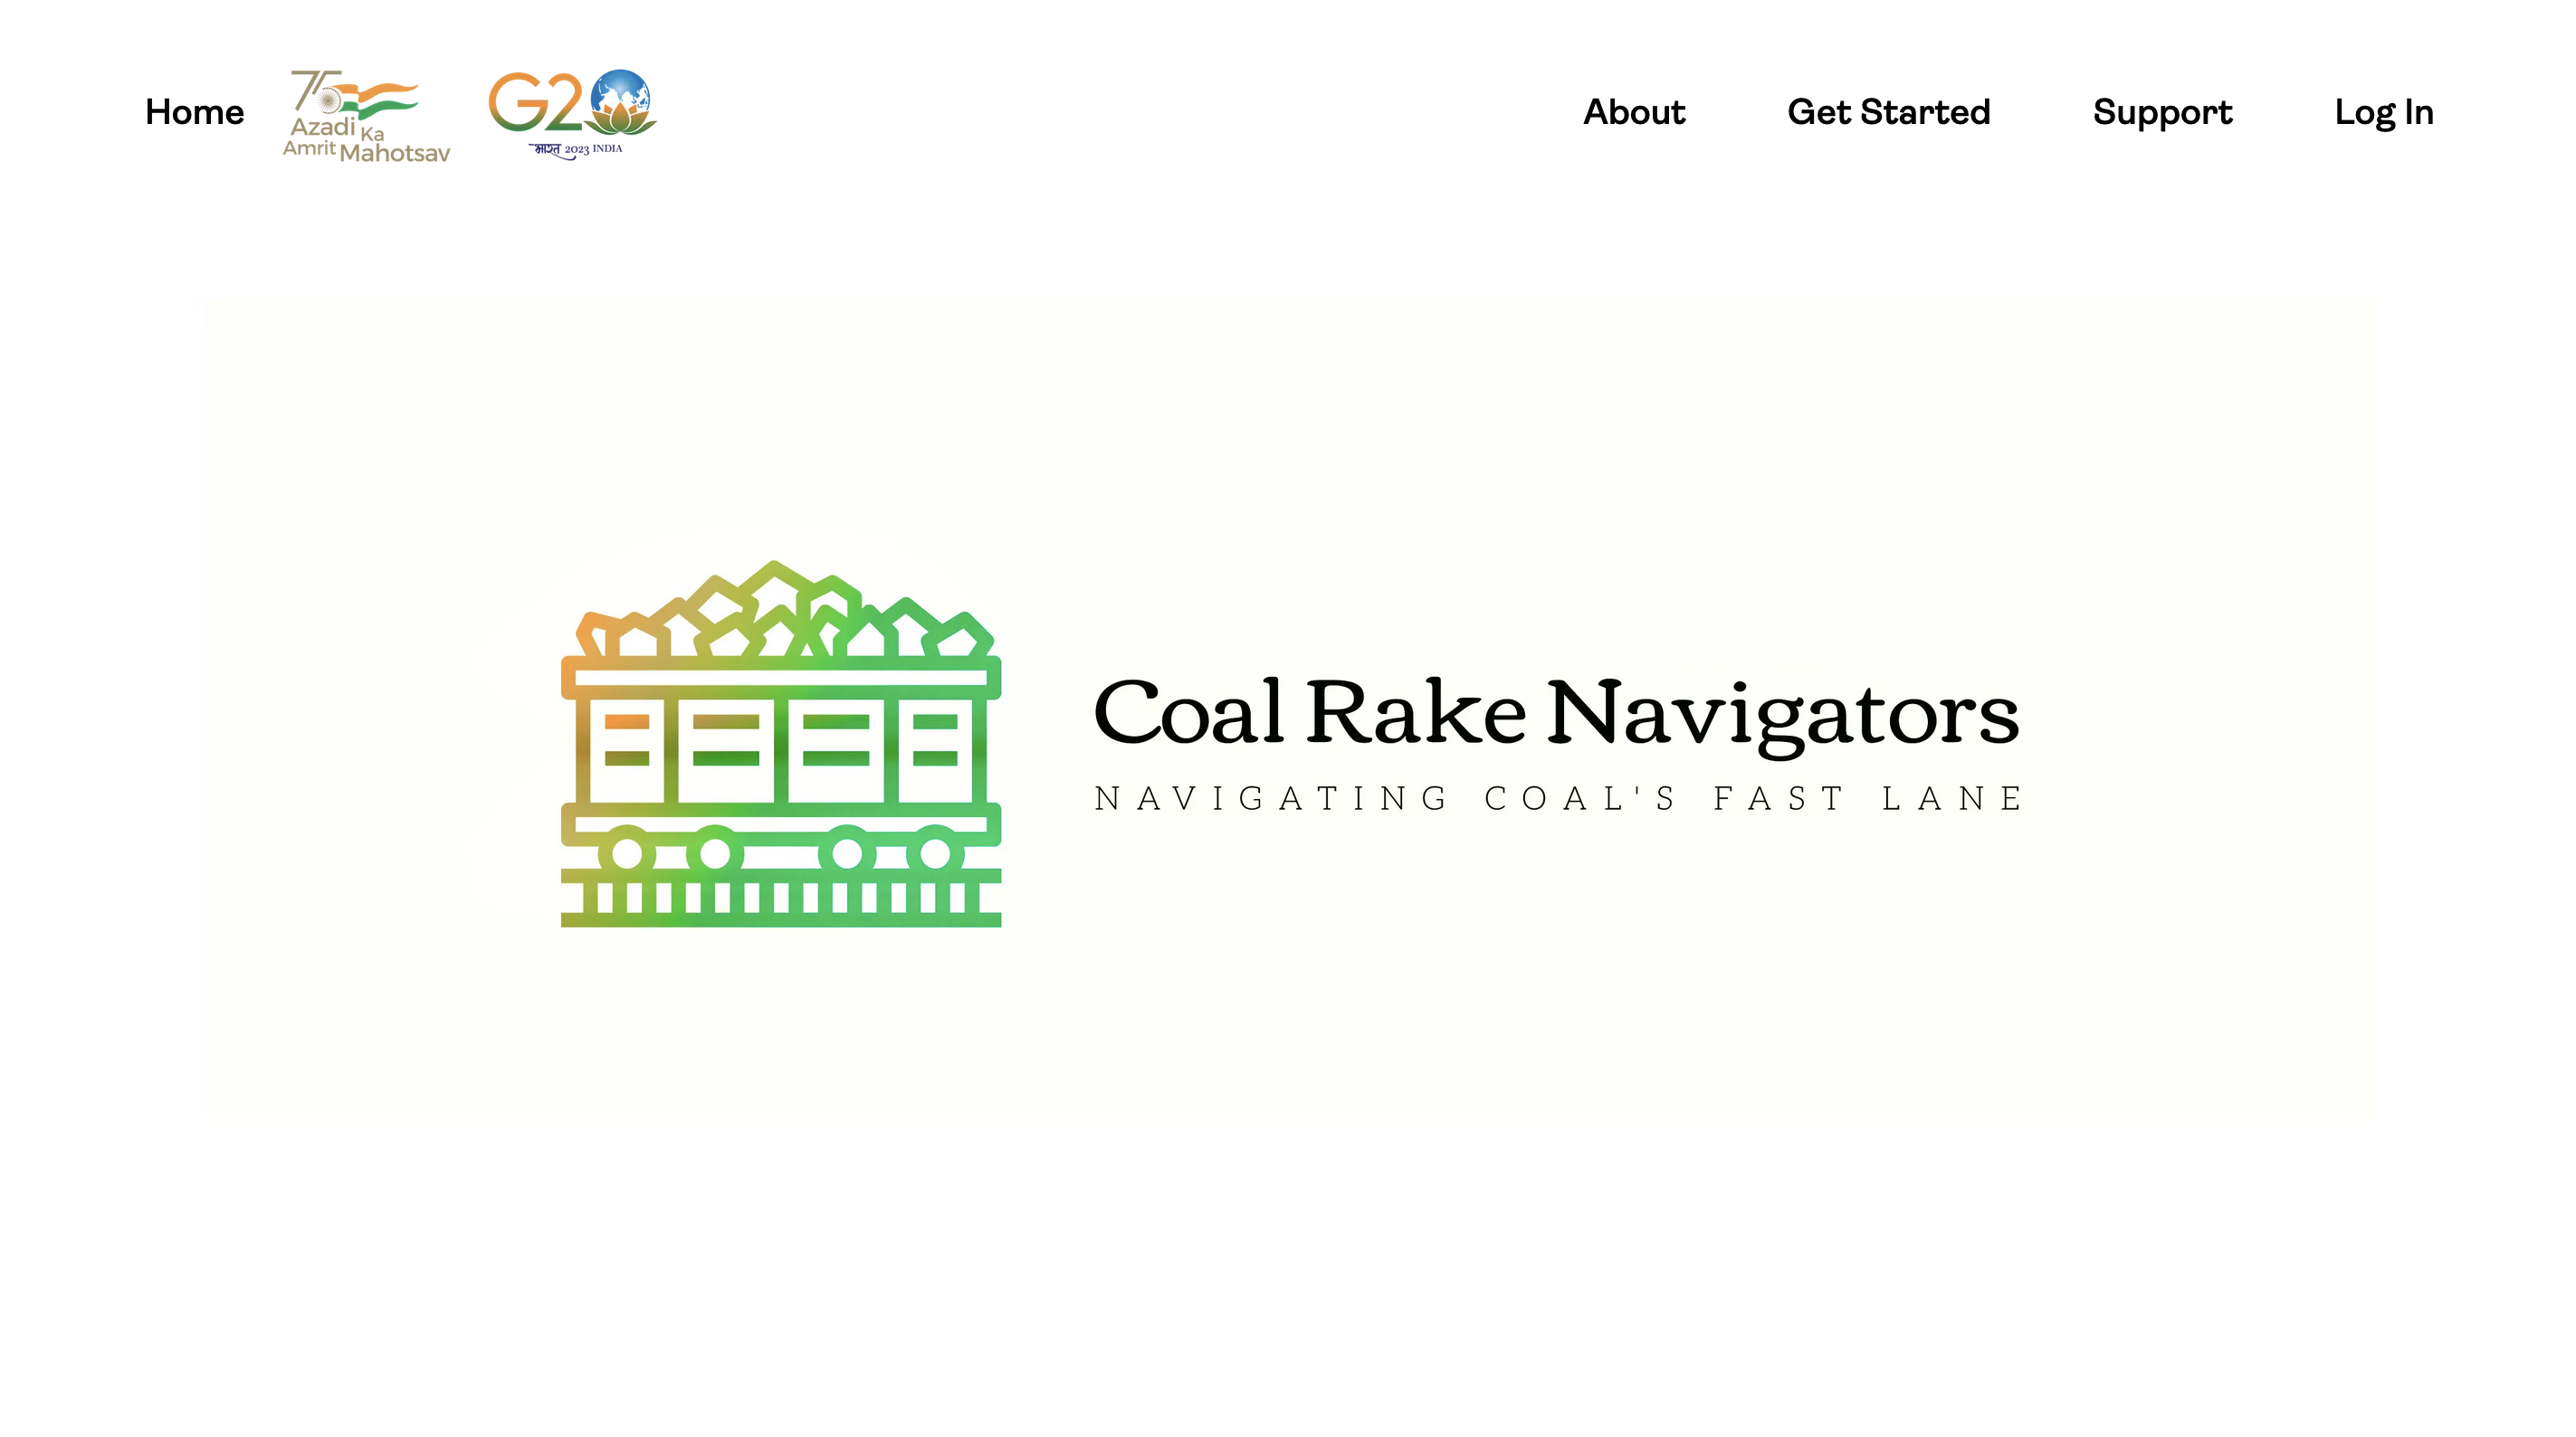 Coal Rake Navigators